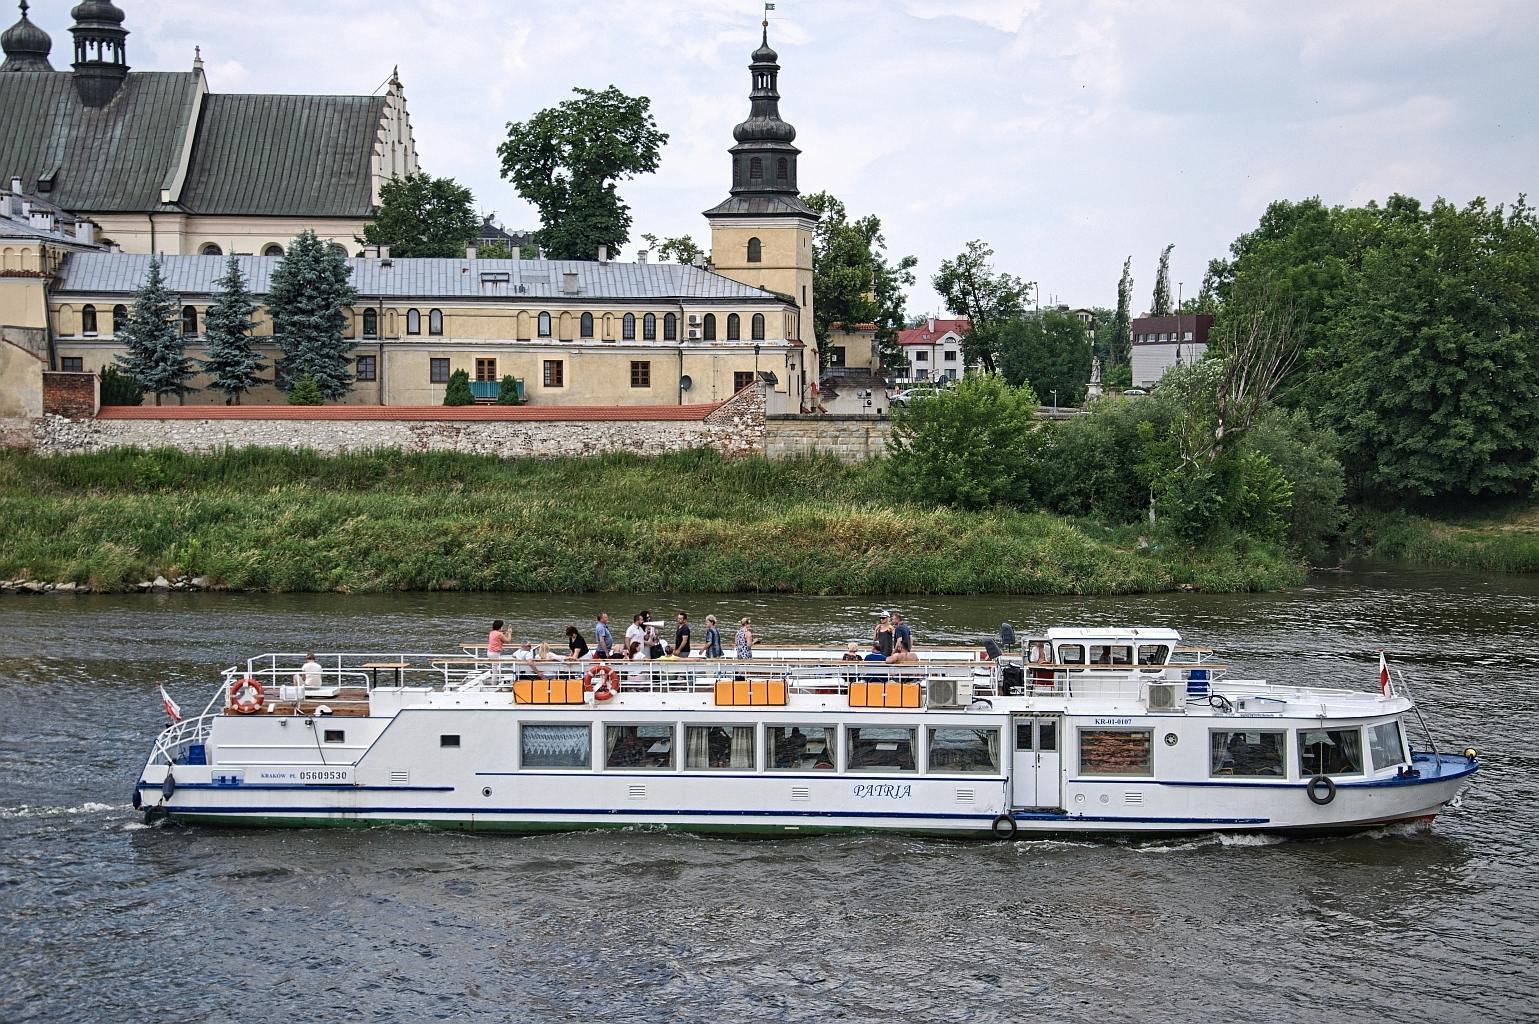 Crucero de 1 hora por el río Vístula en Cracovia con audioguía